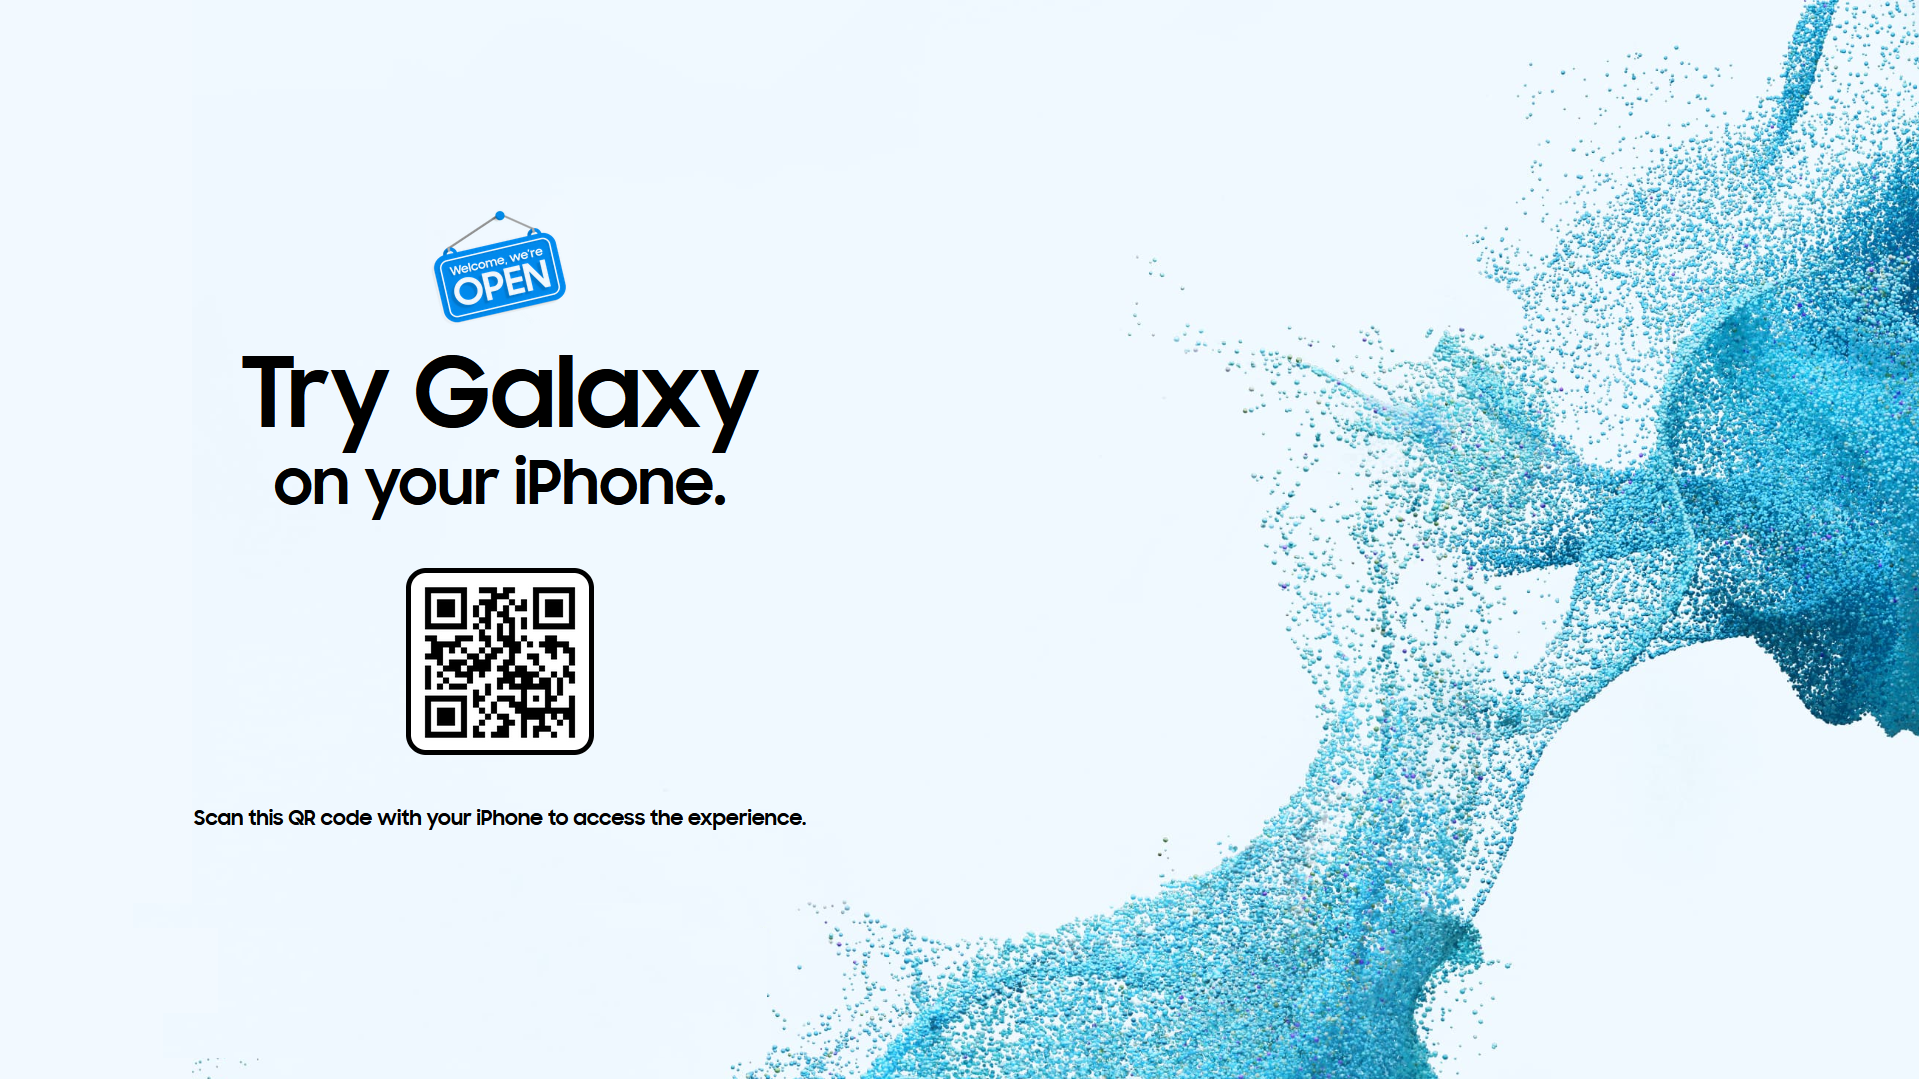 Samsung предлагает опробовать интерфейс Galaxy на iPhone